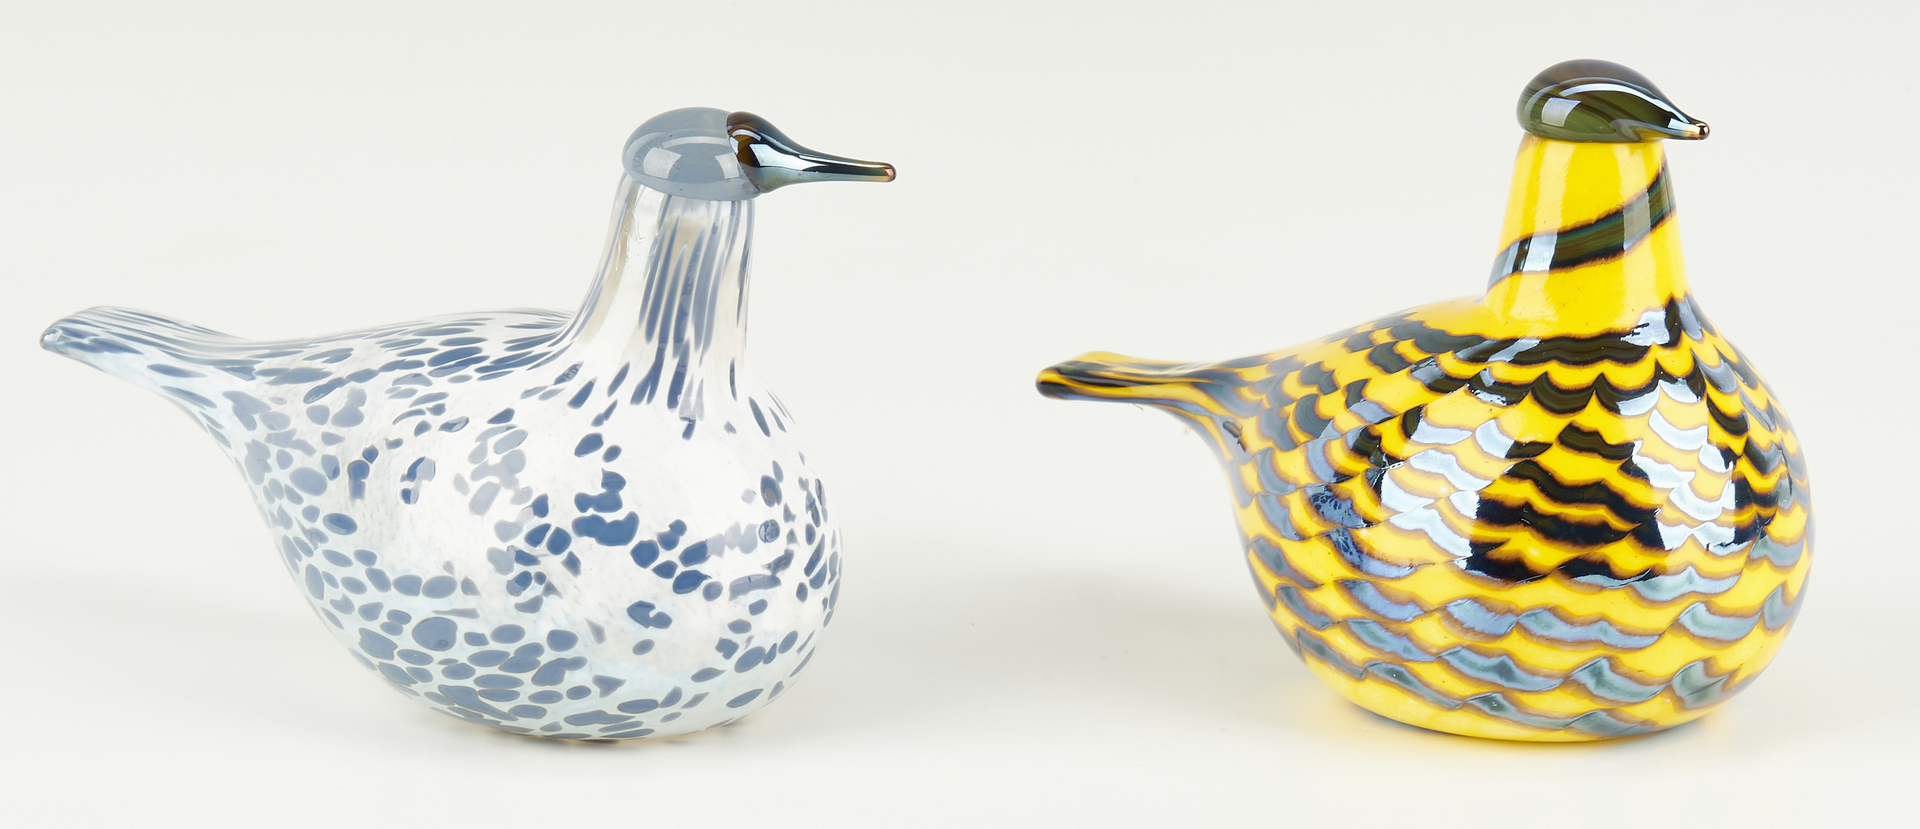 Lot 547: 4 Iittala Oiva Toikka Art Glass Birds